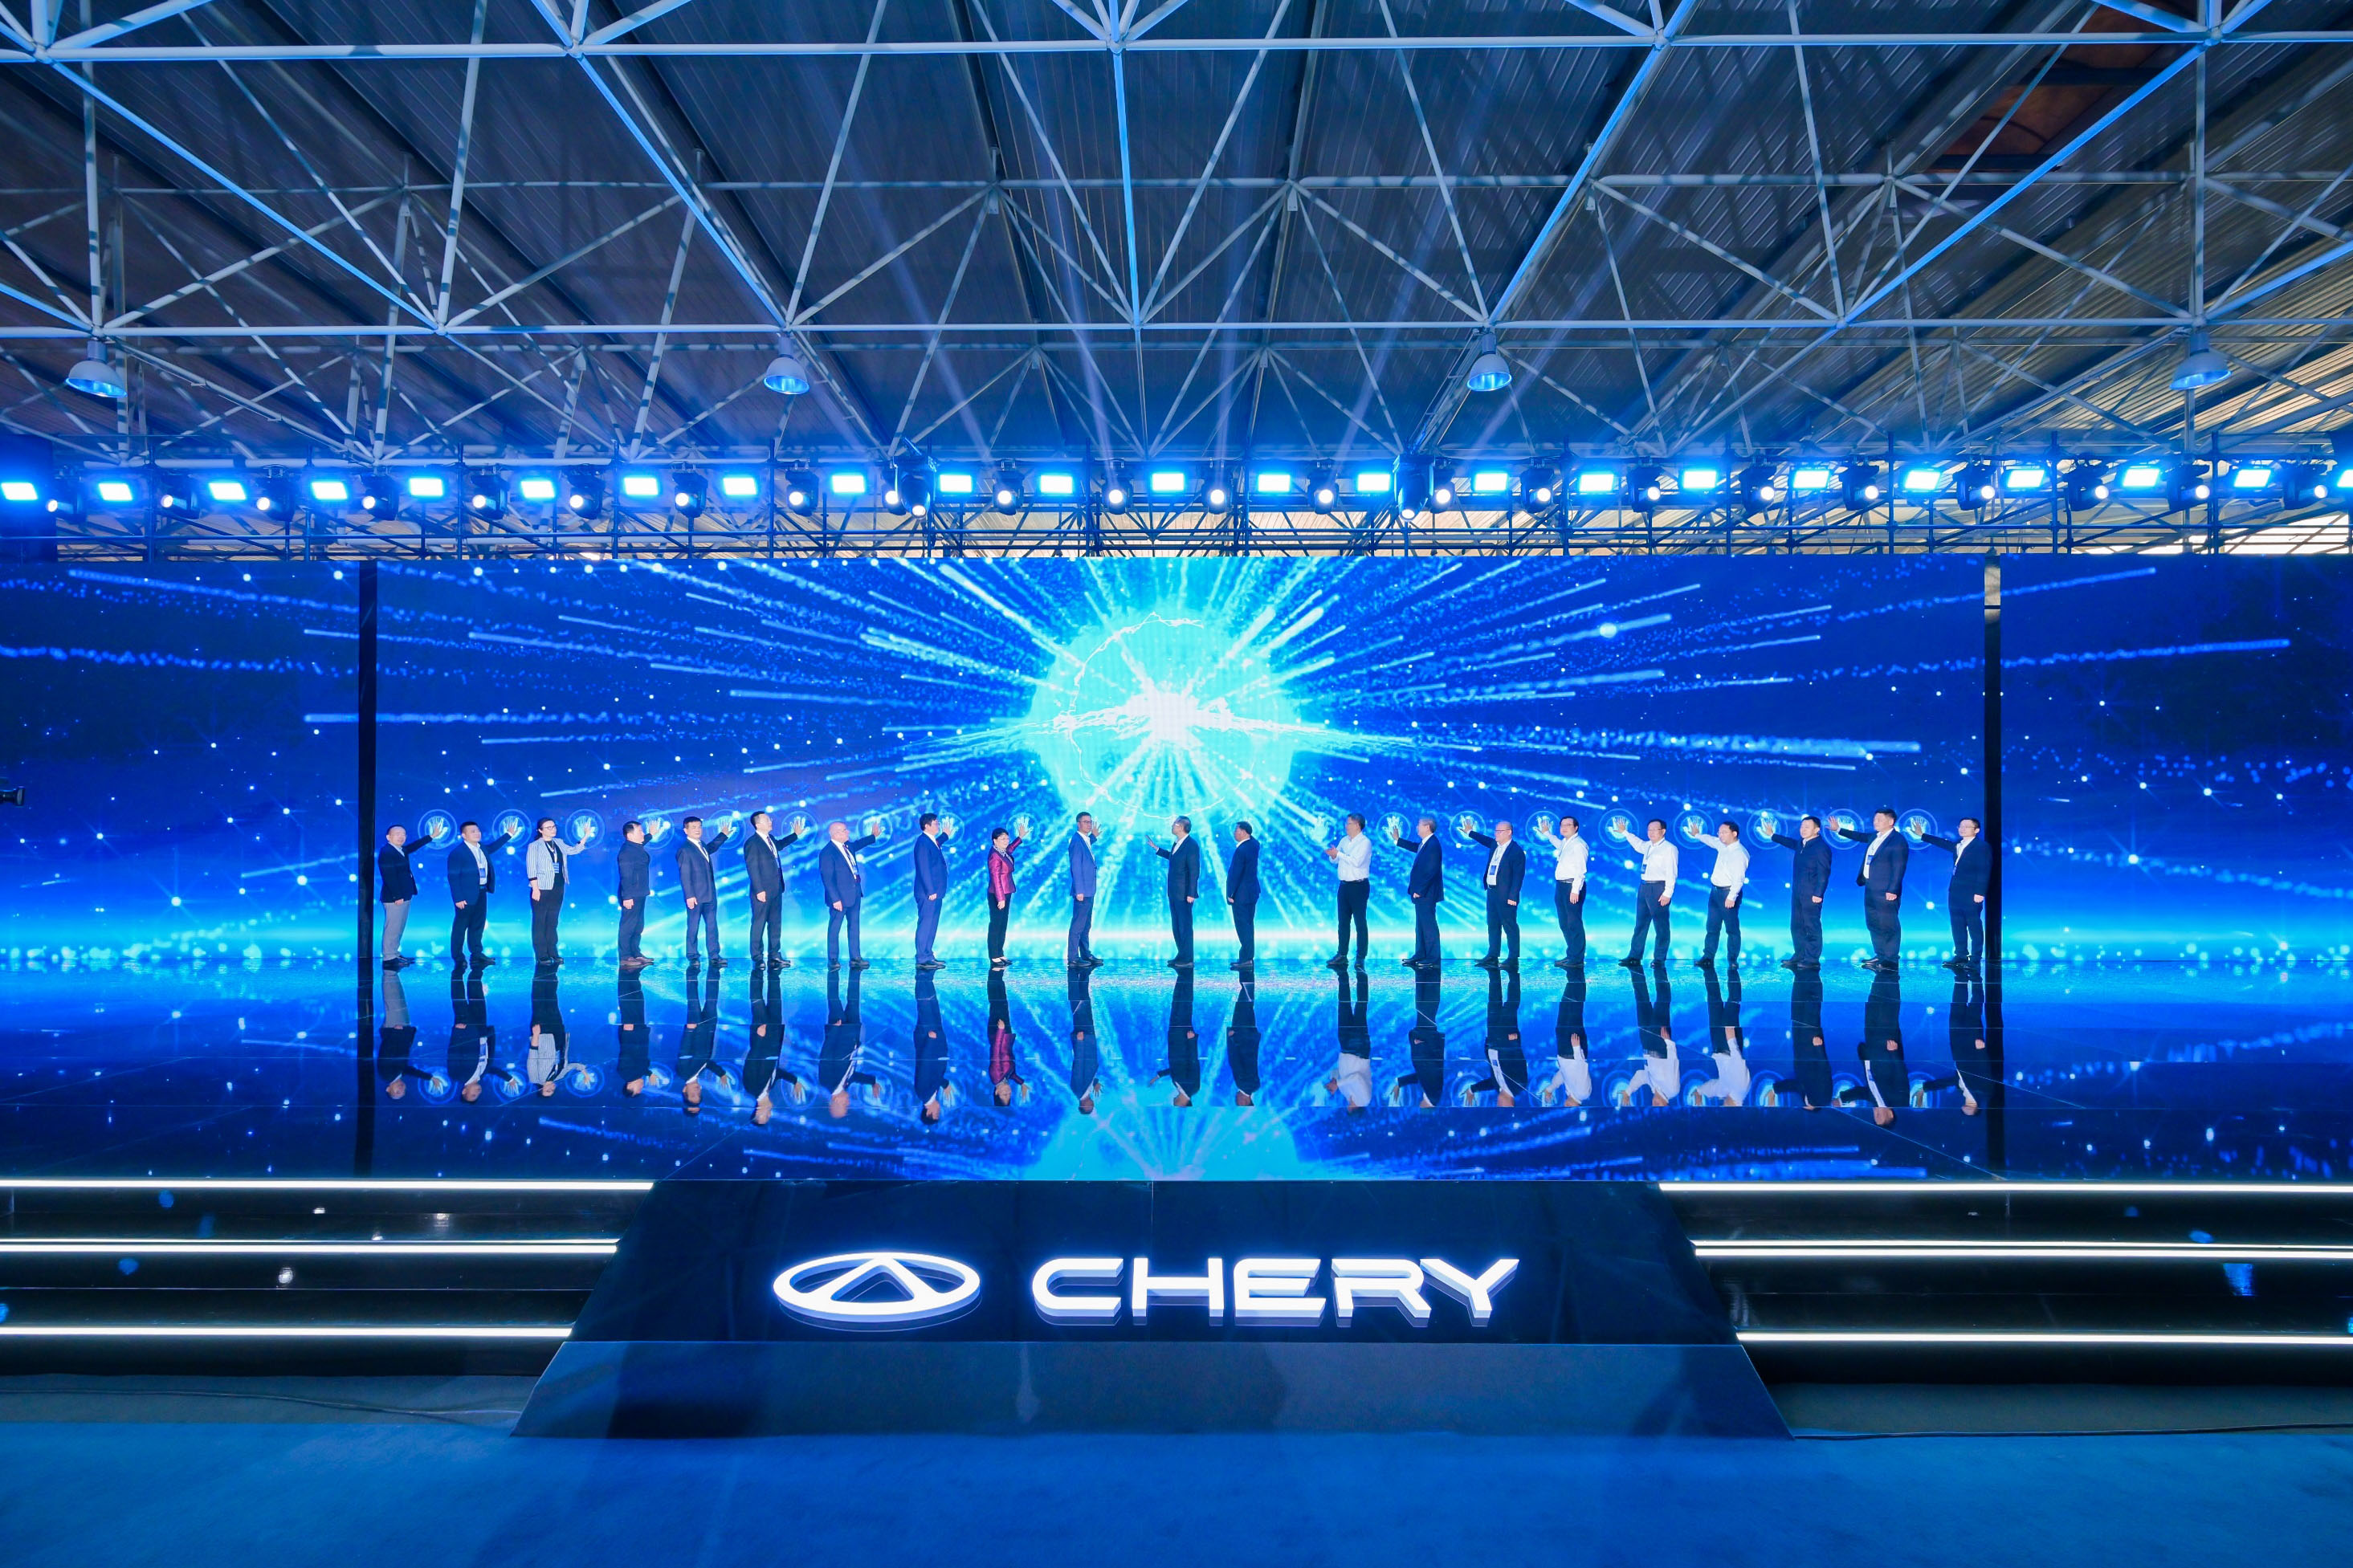 Dünya genelinde Chery satışları 10 ayda 1,5 milyon adede yaklaştı